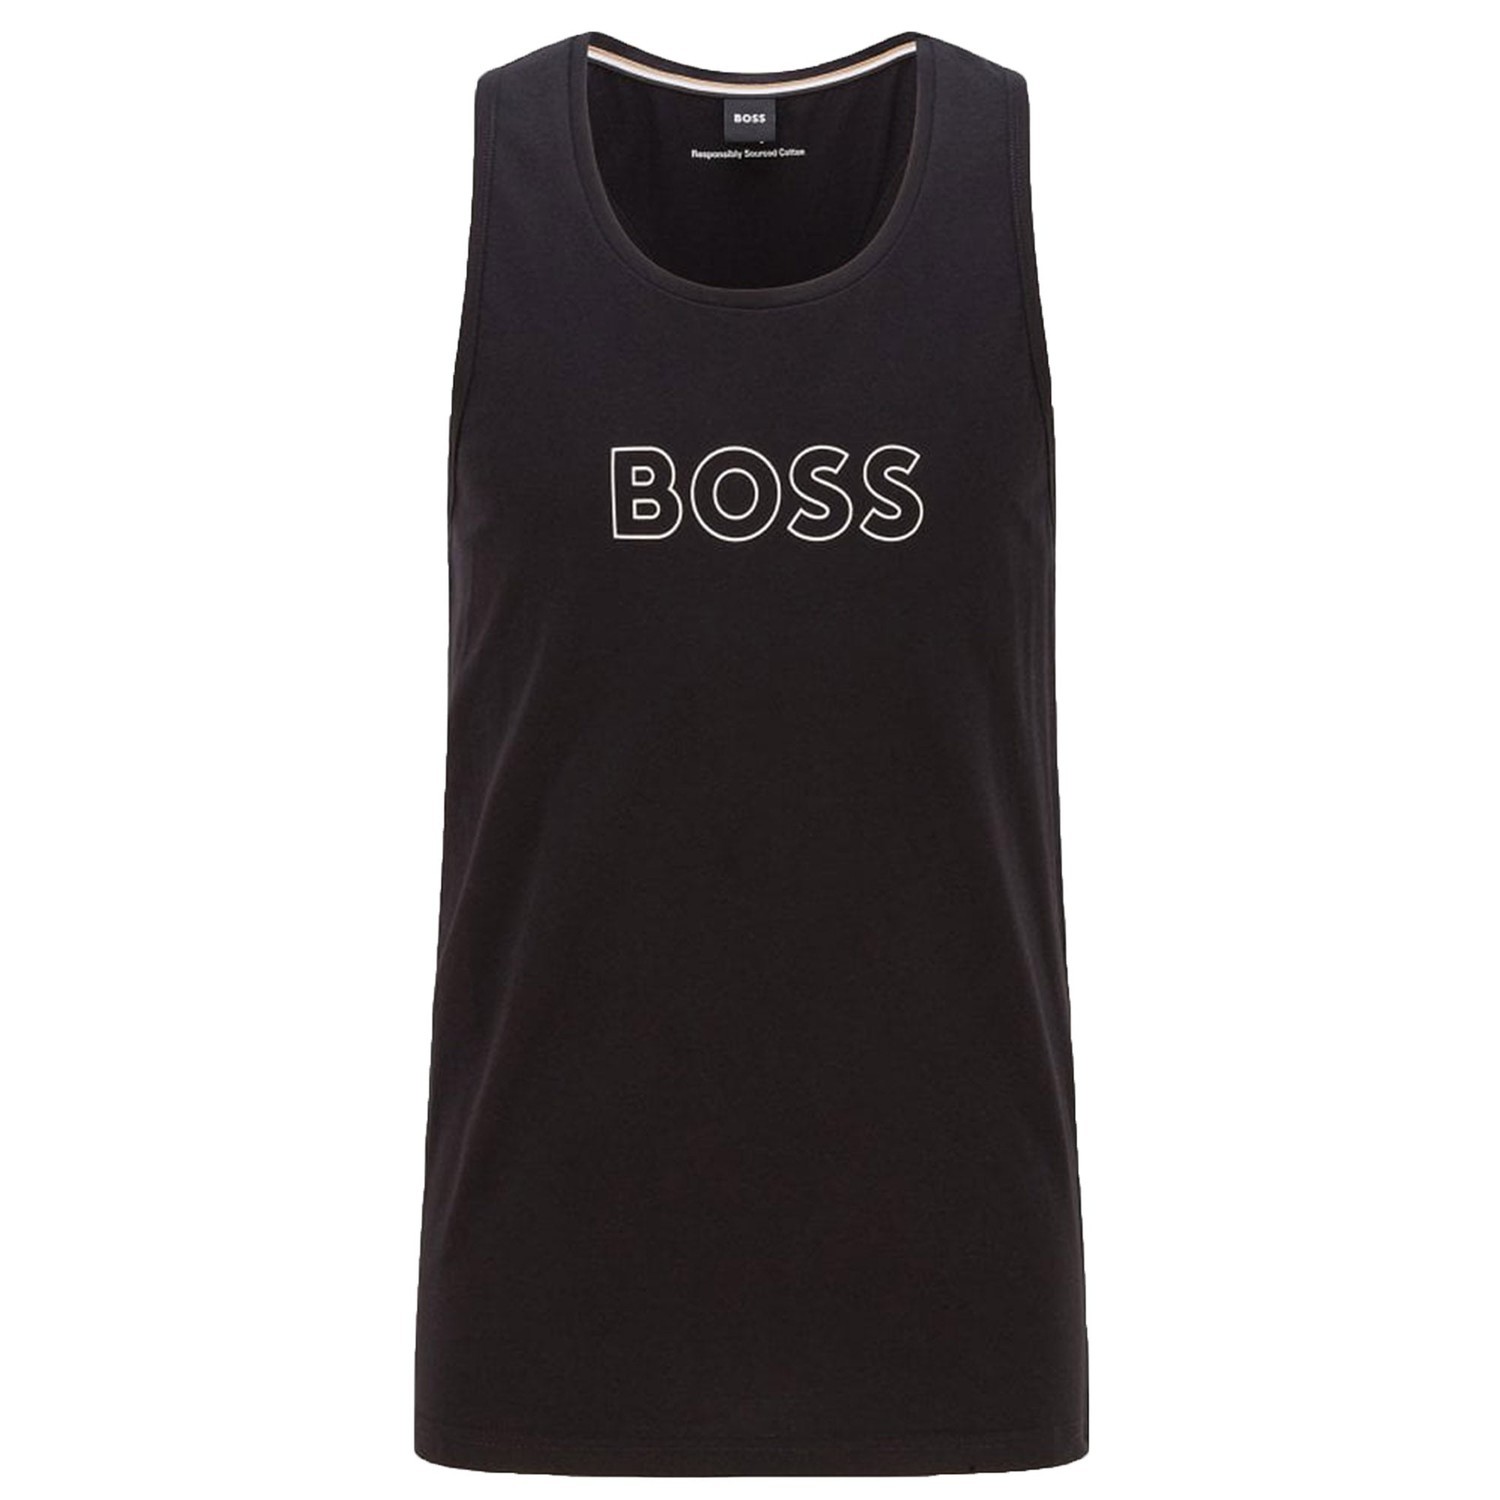 Hugo Boss Mens Logo Vest Black L